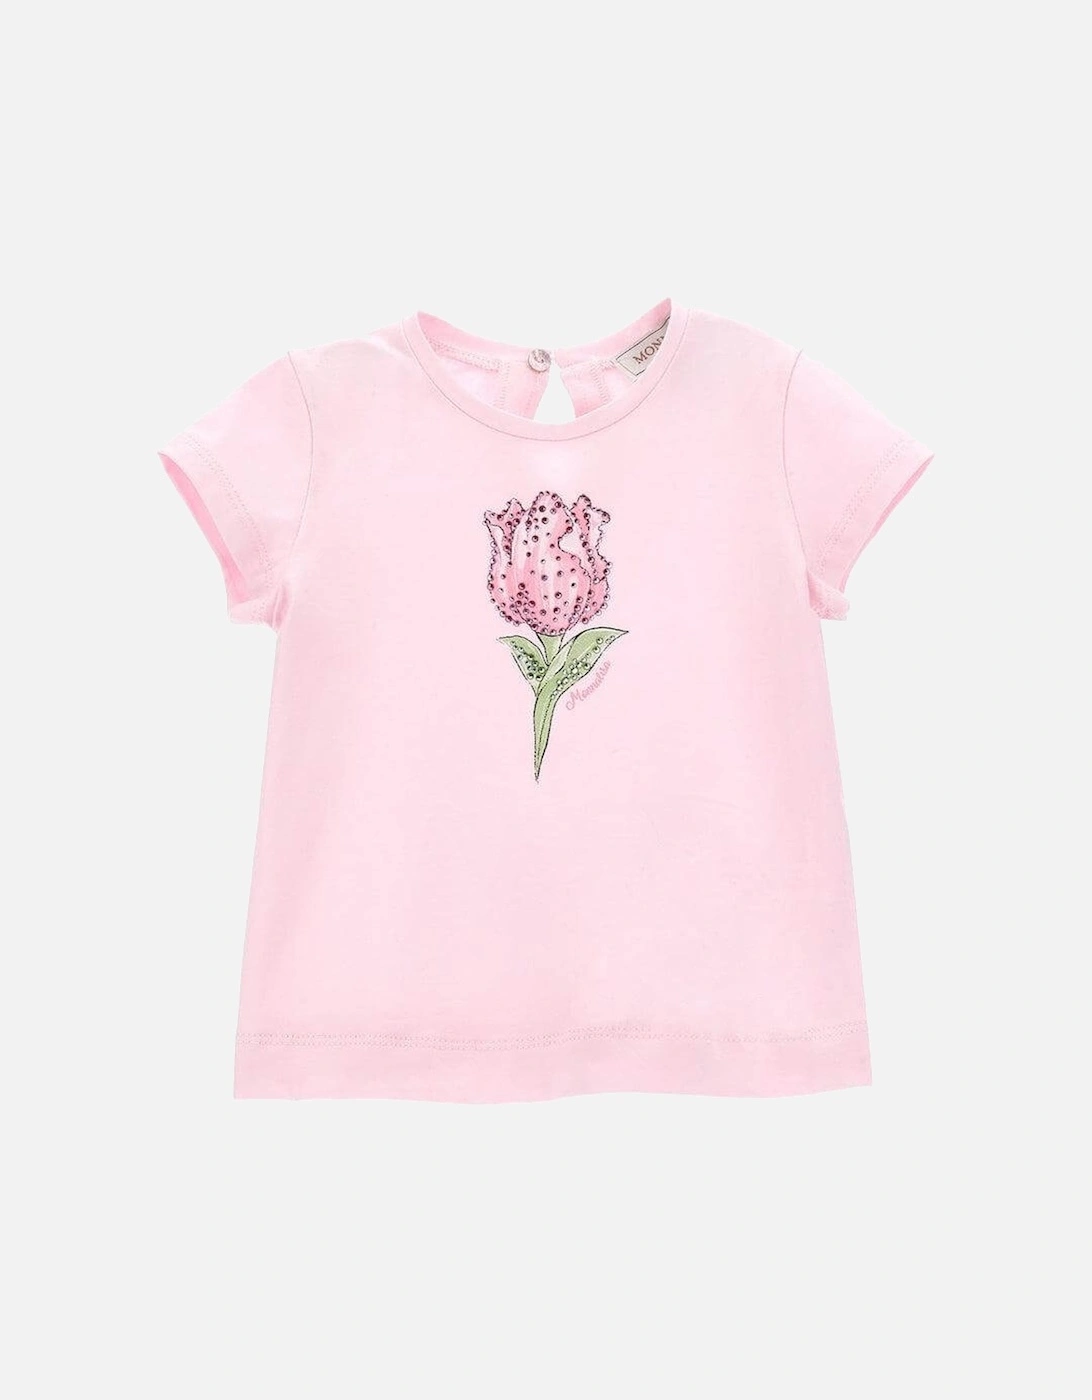 Girls Pink Rose Print T-Shirt, 4 of 3